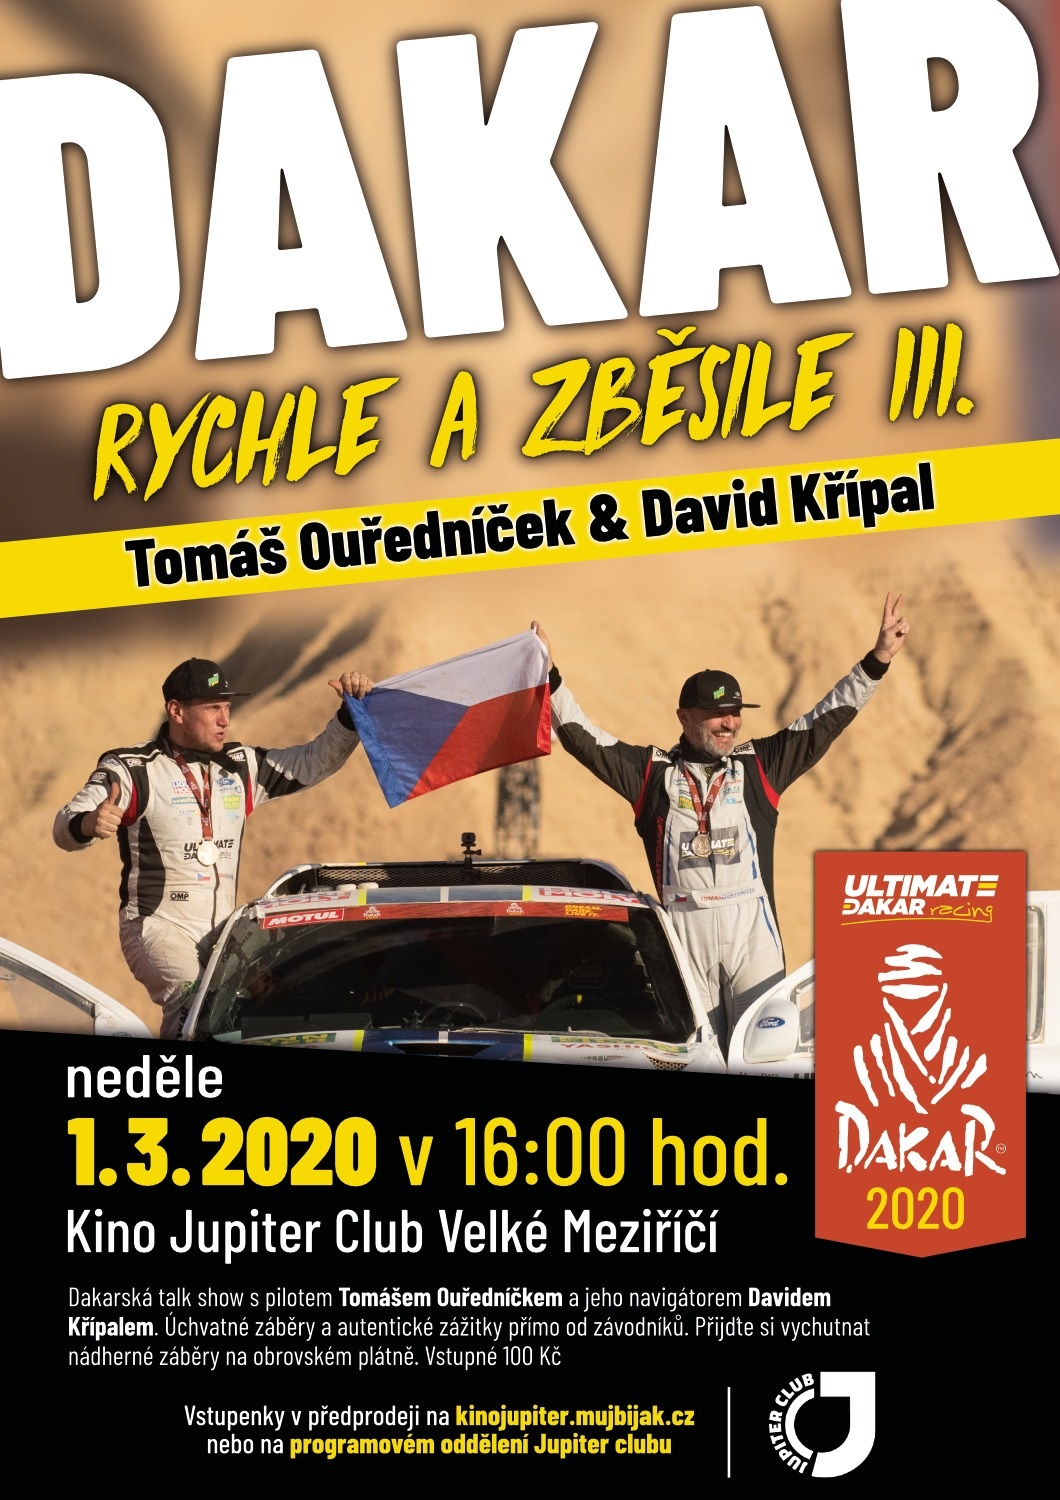 Pozvánka na vyprávění o letošním Dakaru